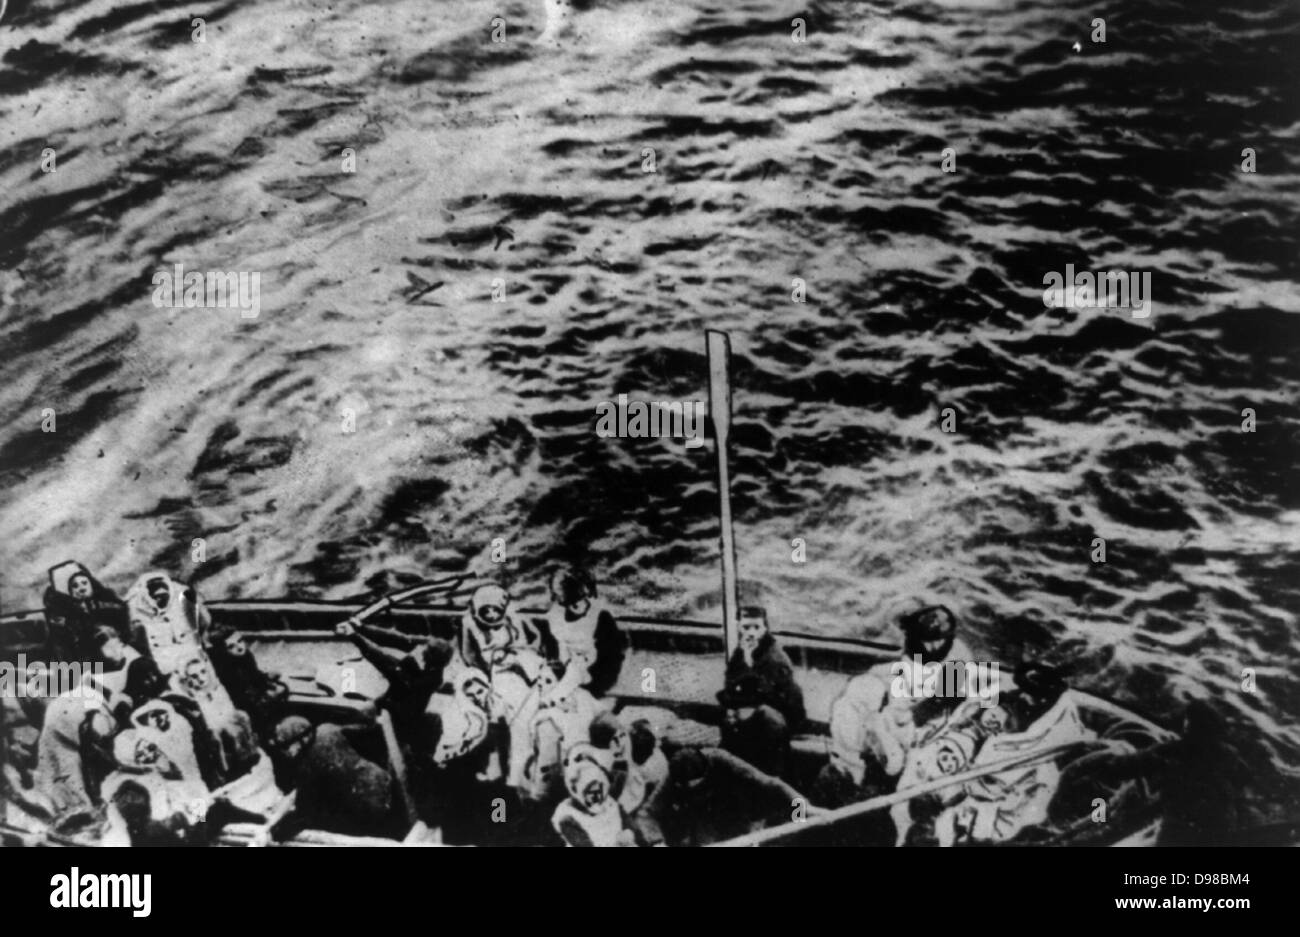 Les survivants du Titanic sur chemin de navire de sauvetage Carpathia Date de création/publication : Avril 1912. Moyen : 1 tirage photographique. Résumé : groupe de personnes dans un bateau de sauvetage. Banque D'Images